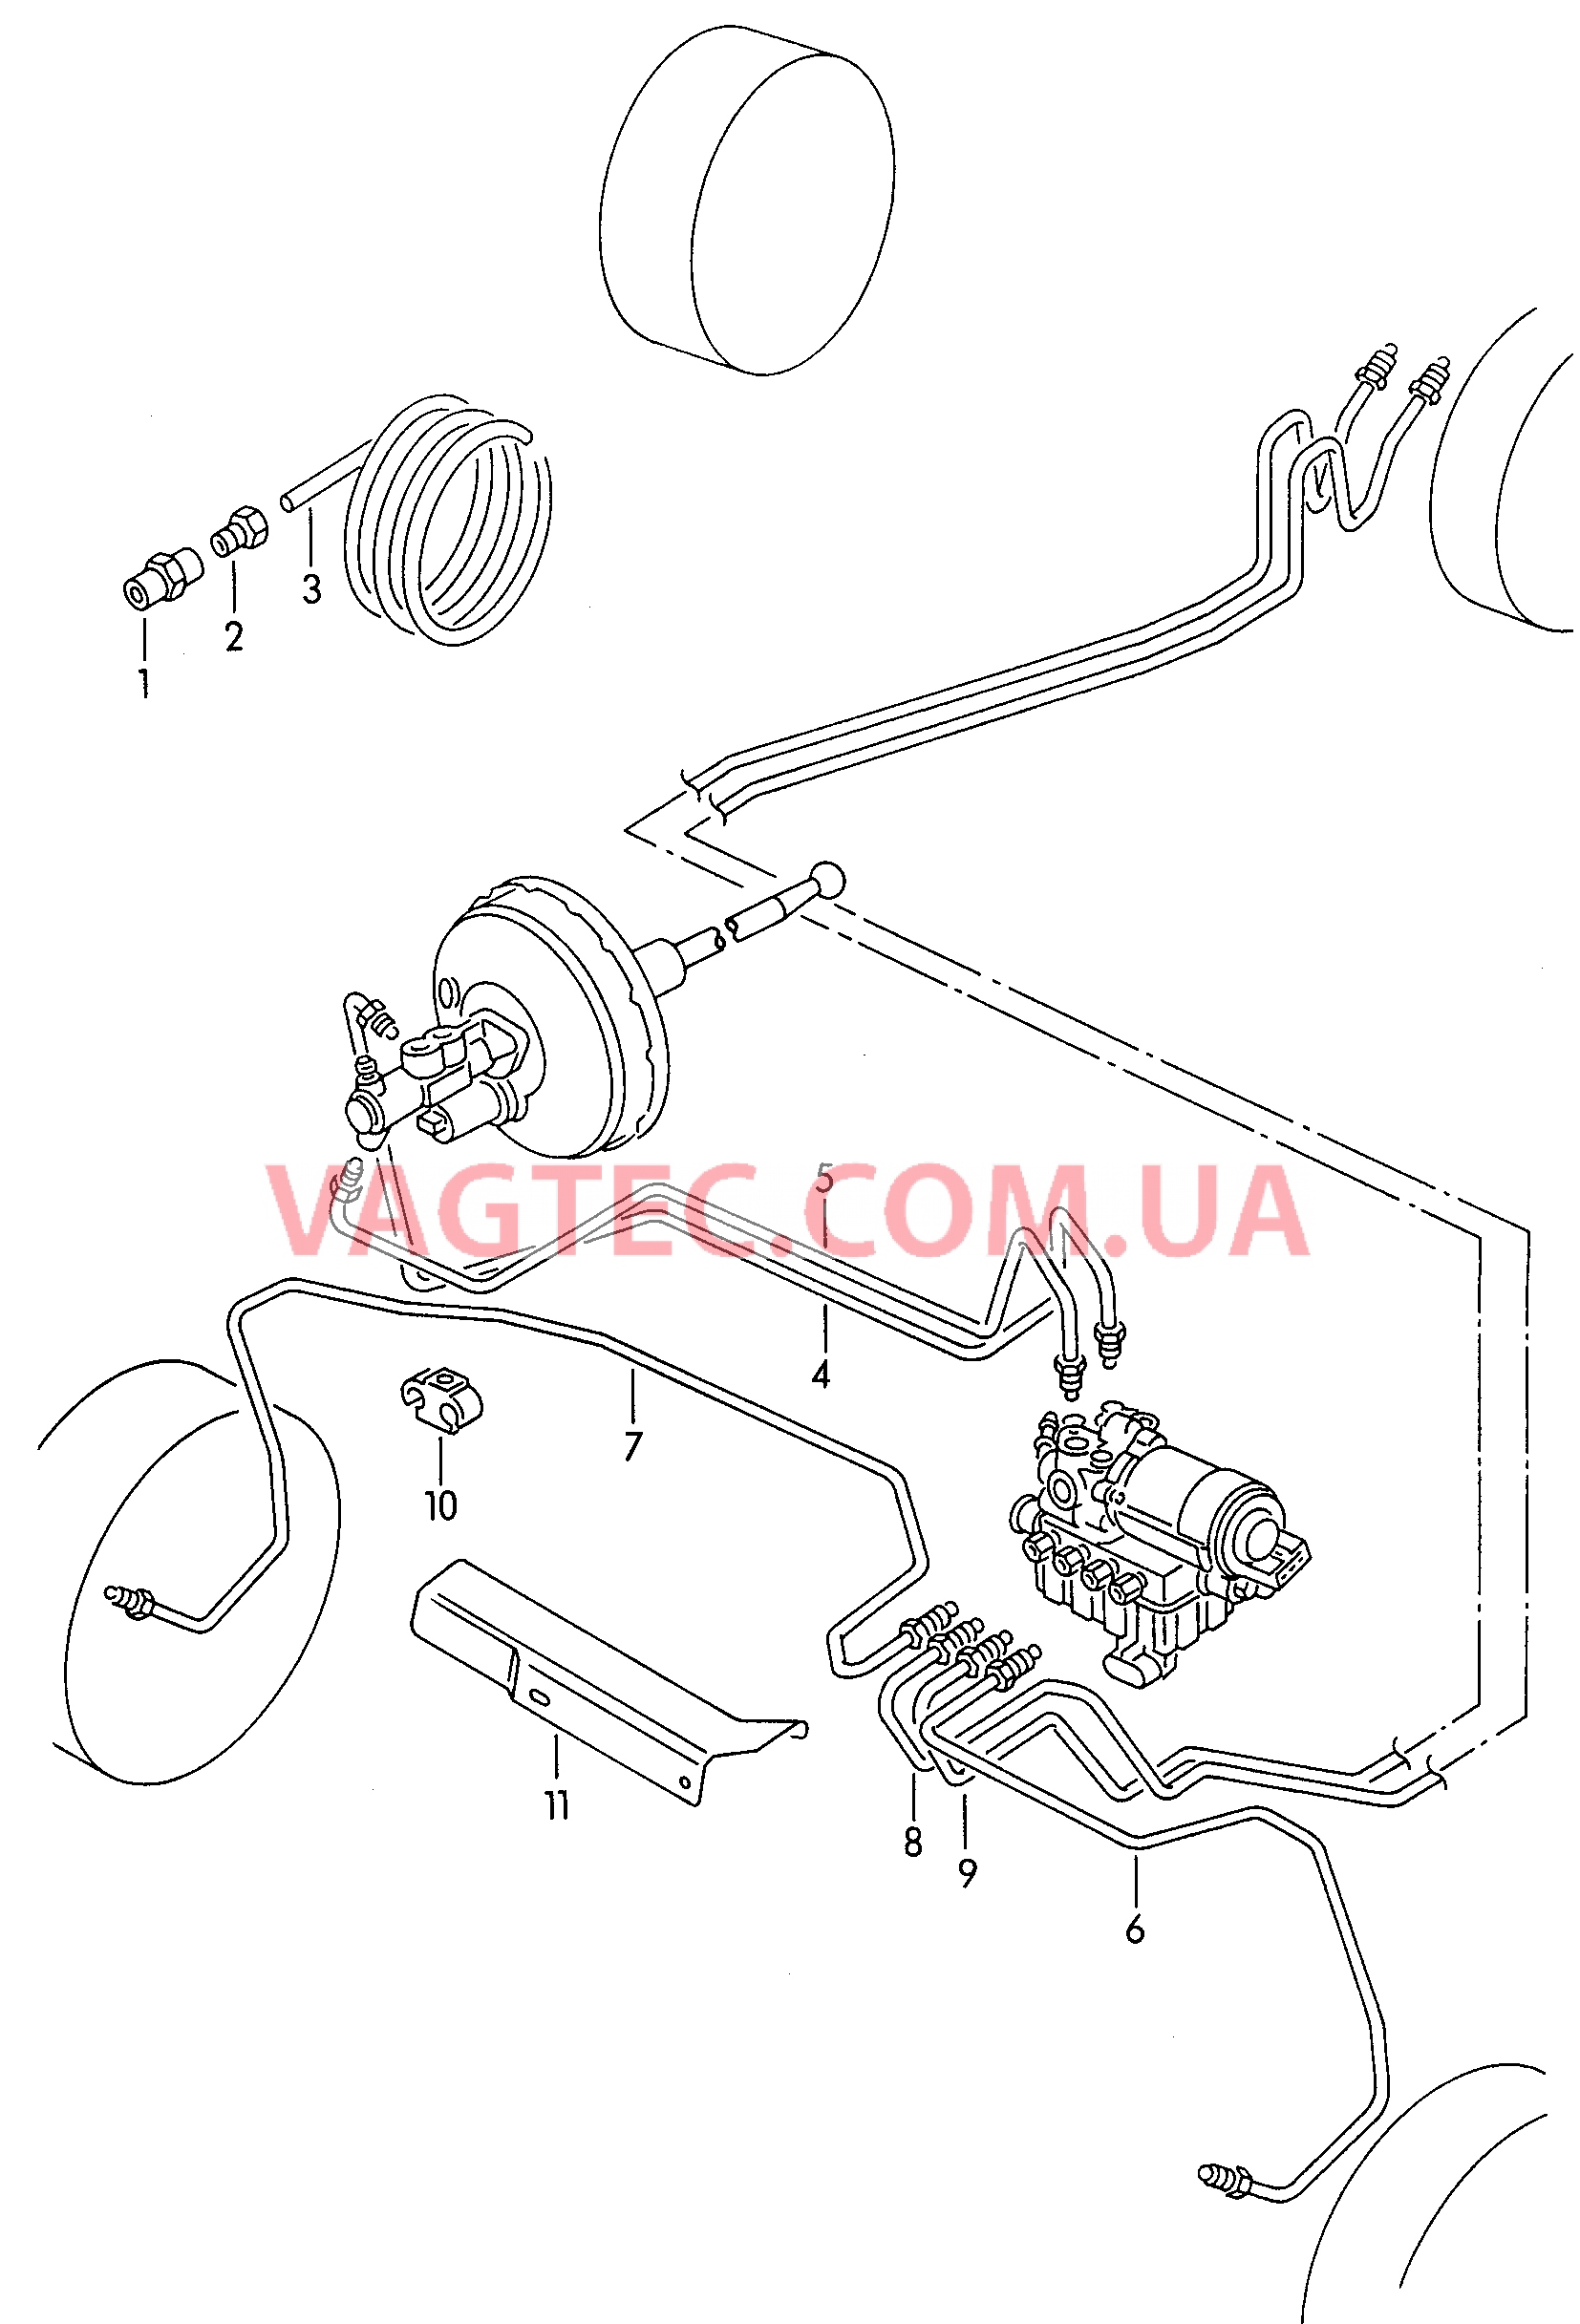 Тормозная трубка для а/м с антиблокировочной системой тормозов        -ABS-  для VOLKSWAGEN Caddy 2002